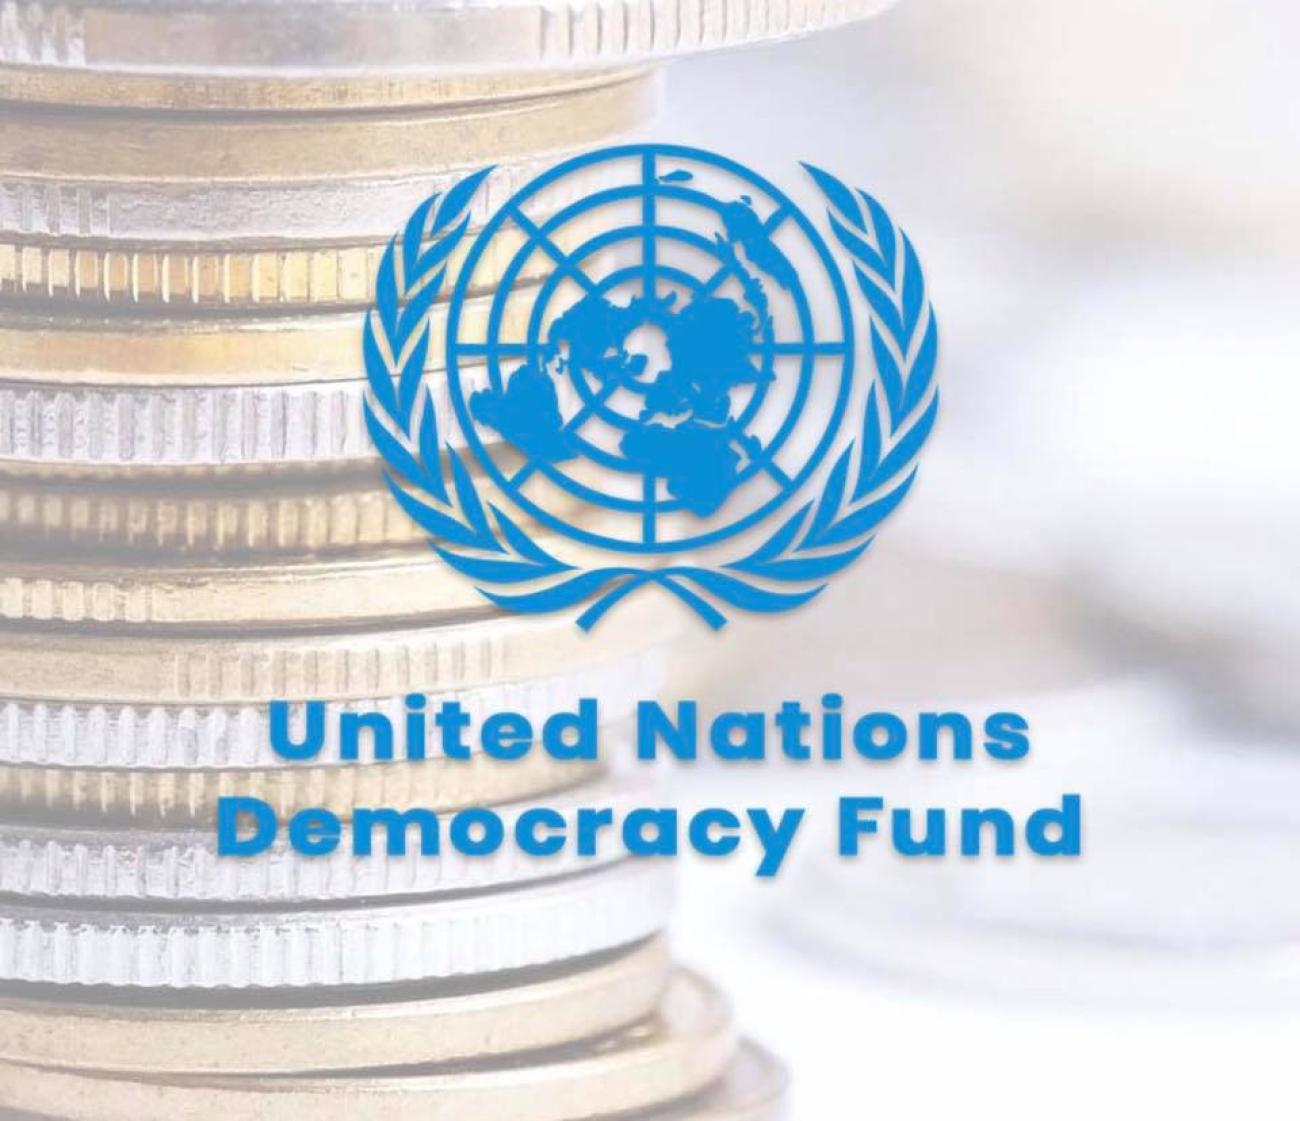 United Nations Democracy Fund Image